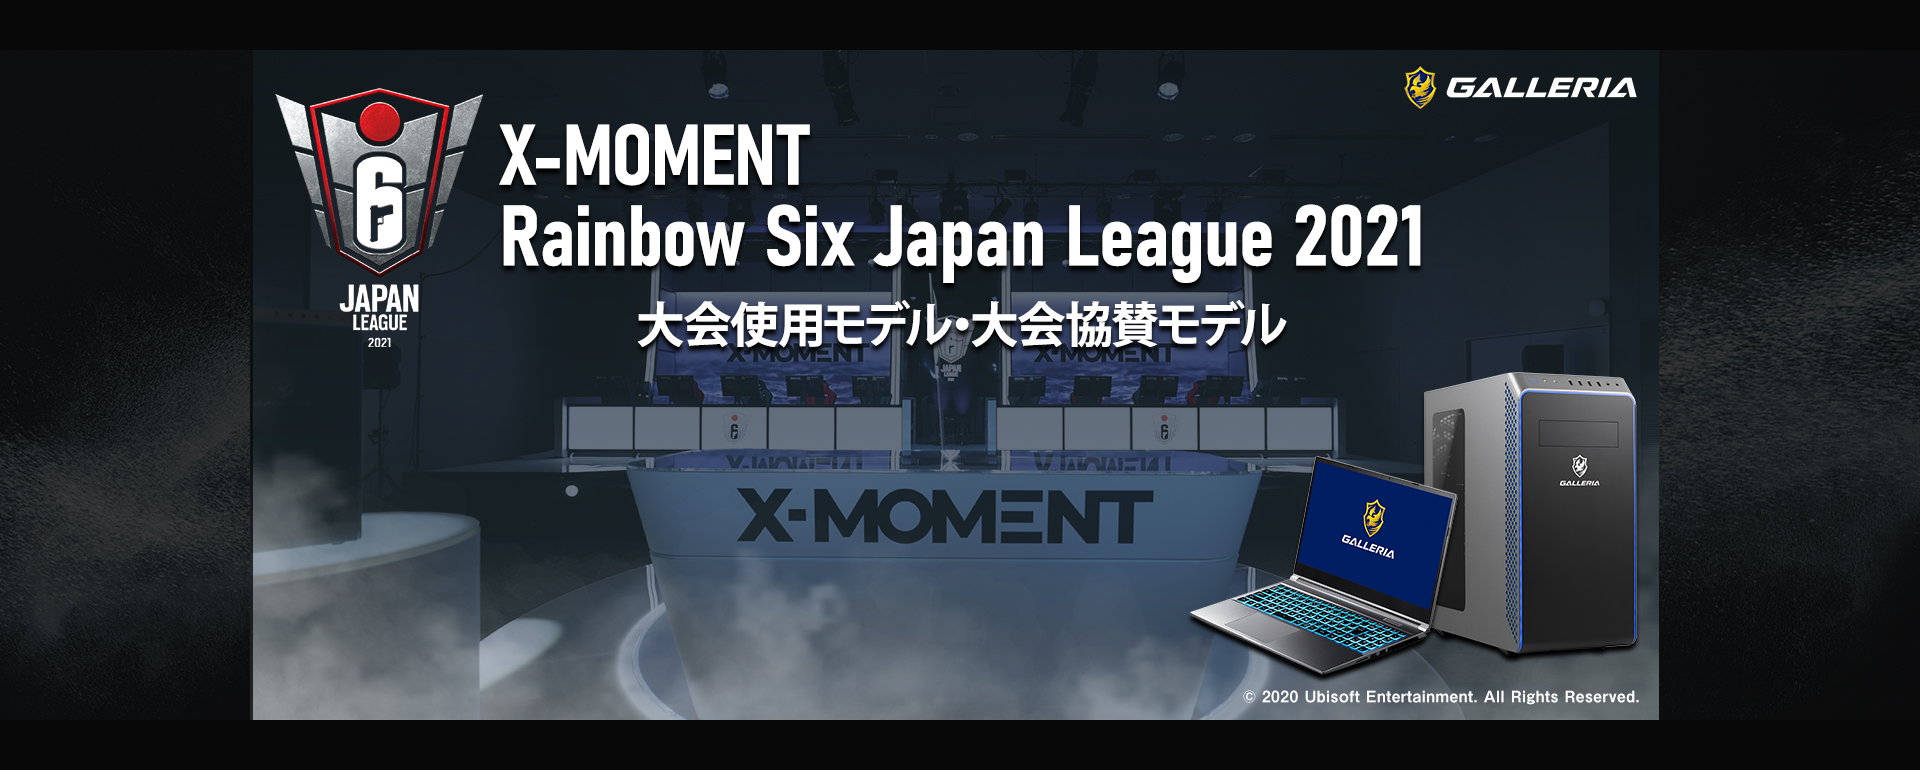 X-MOMENT Rainbow Six Japan League 2021 大会使用モデル・大会協賛モデル